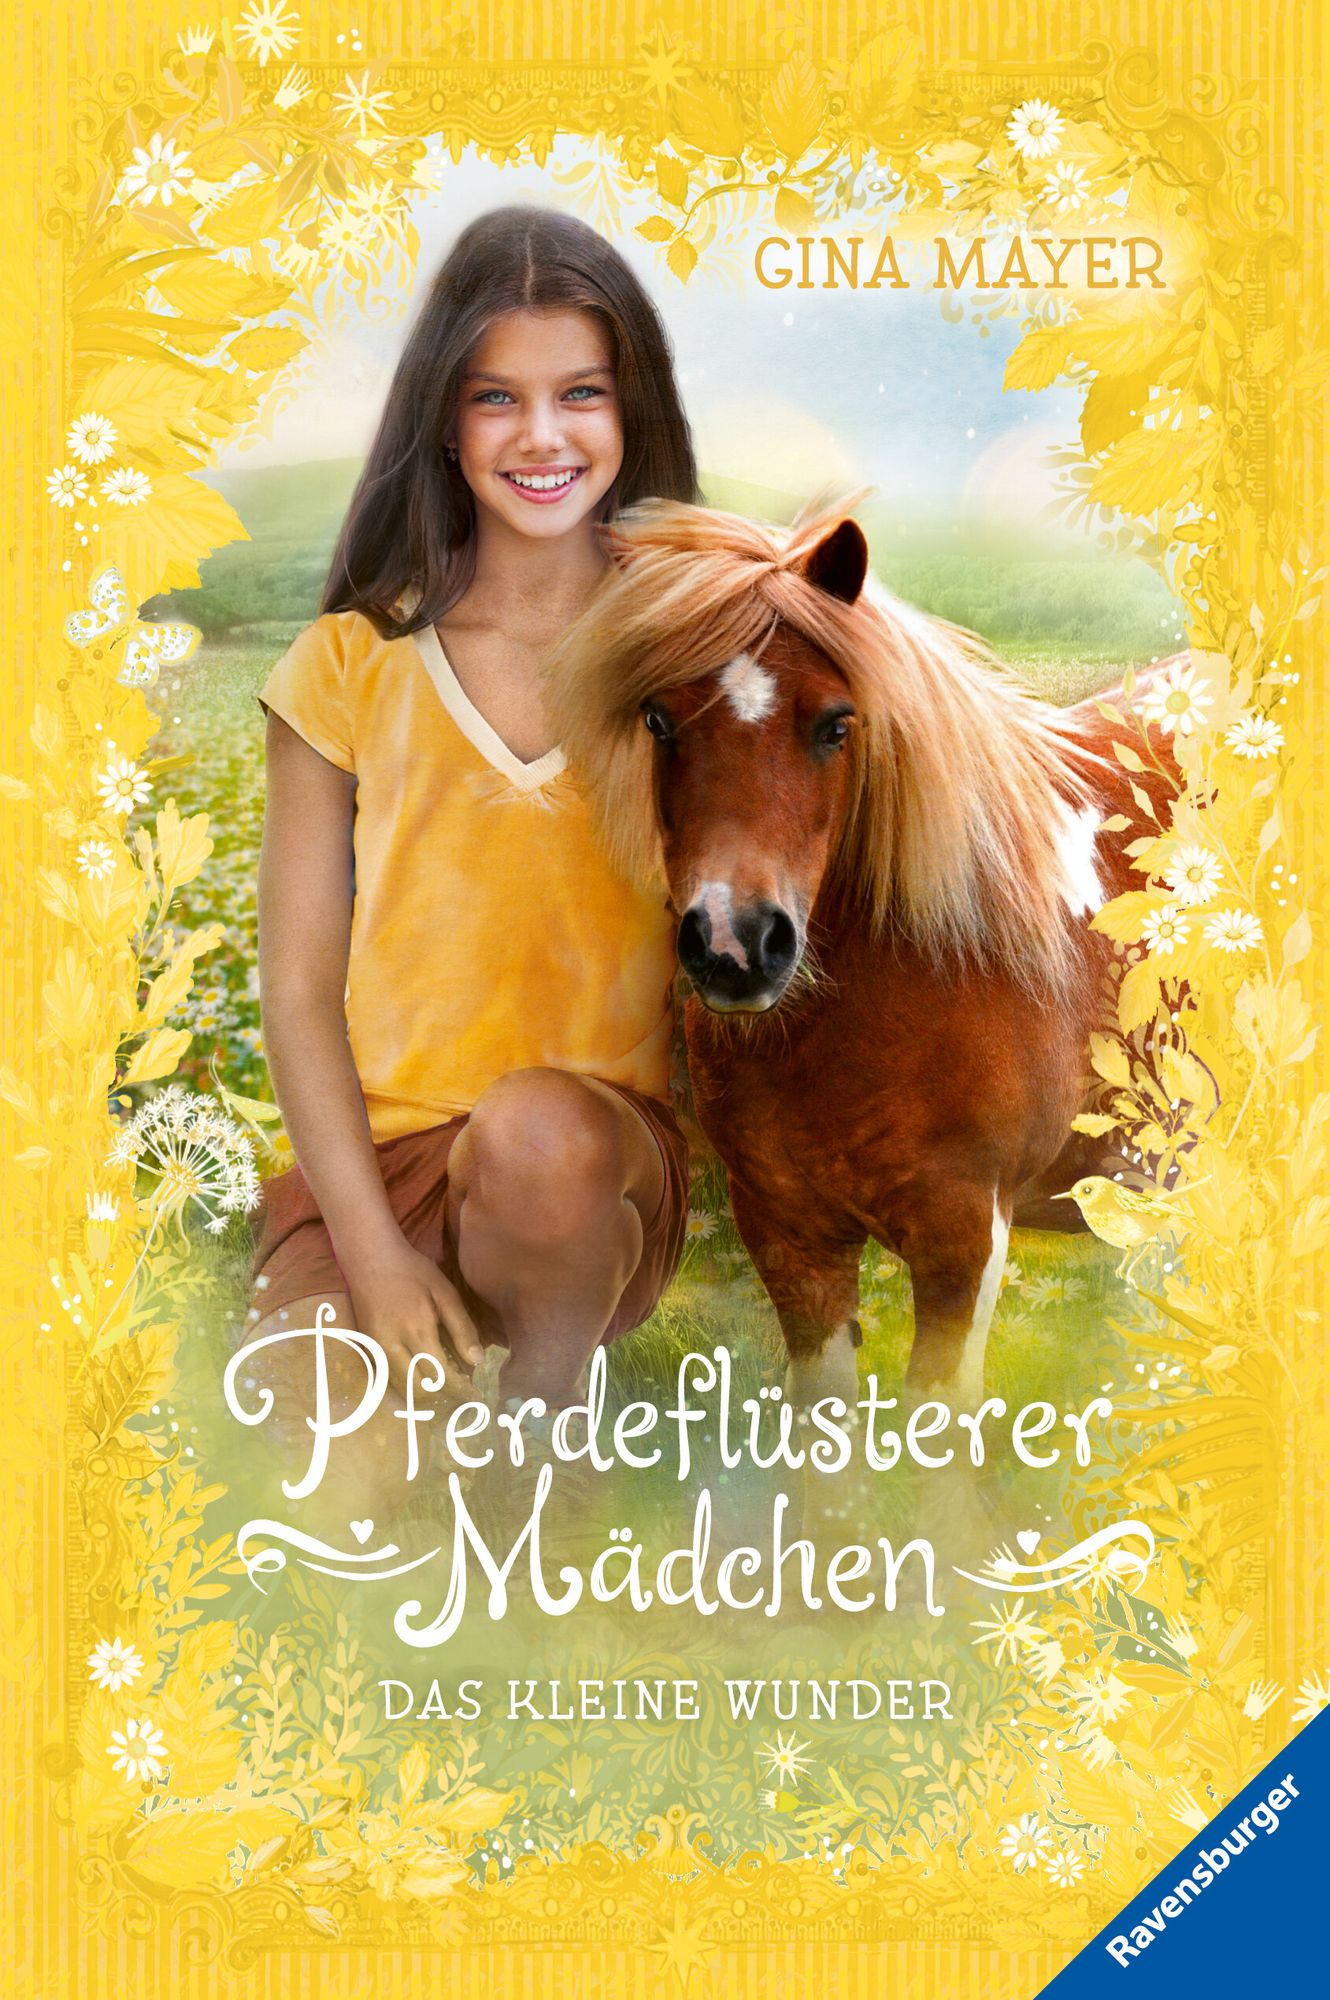 Pferdeflüsterer-Mädchen, Band 4: Das kleine Wunder' von 'Gina Mayer' - Buch  - '978-3-473-40473-5